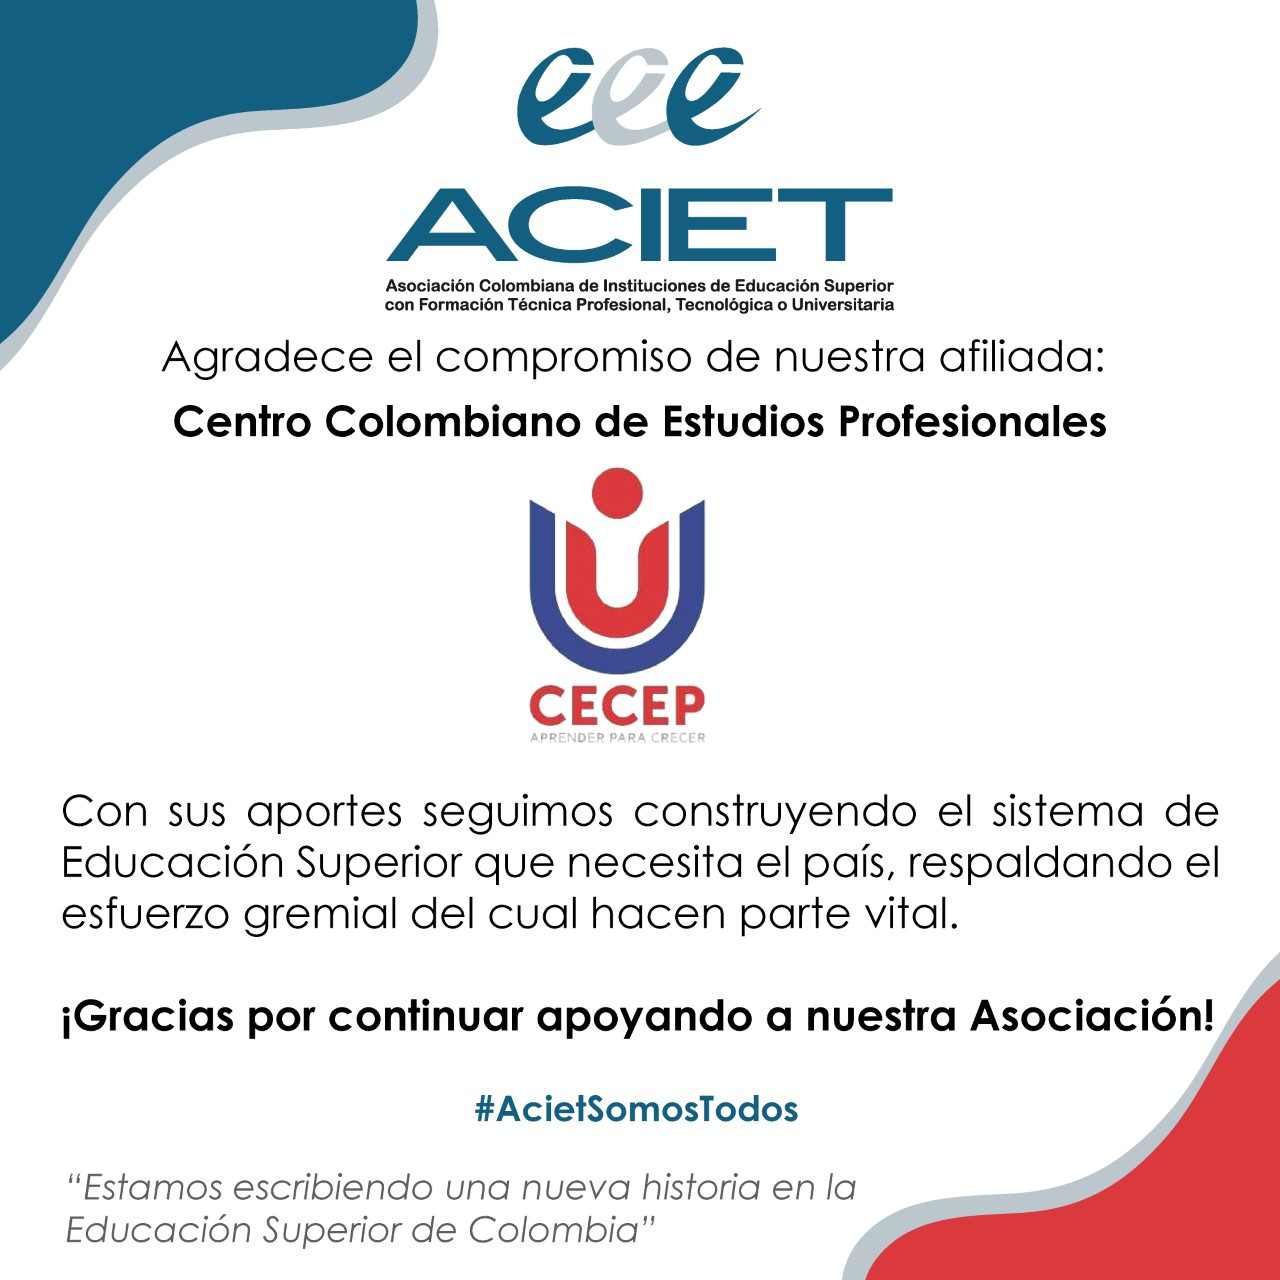 Reconocimiento por parte de la Asociación Colombiana de Instituciones de Educación Superior con Formación Técnica Profesional, Tecnológica o Universitaria - ACIET